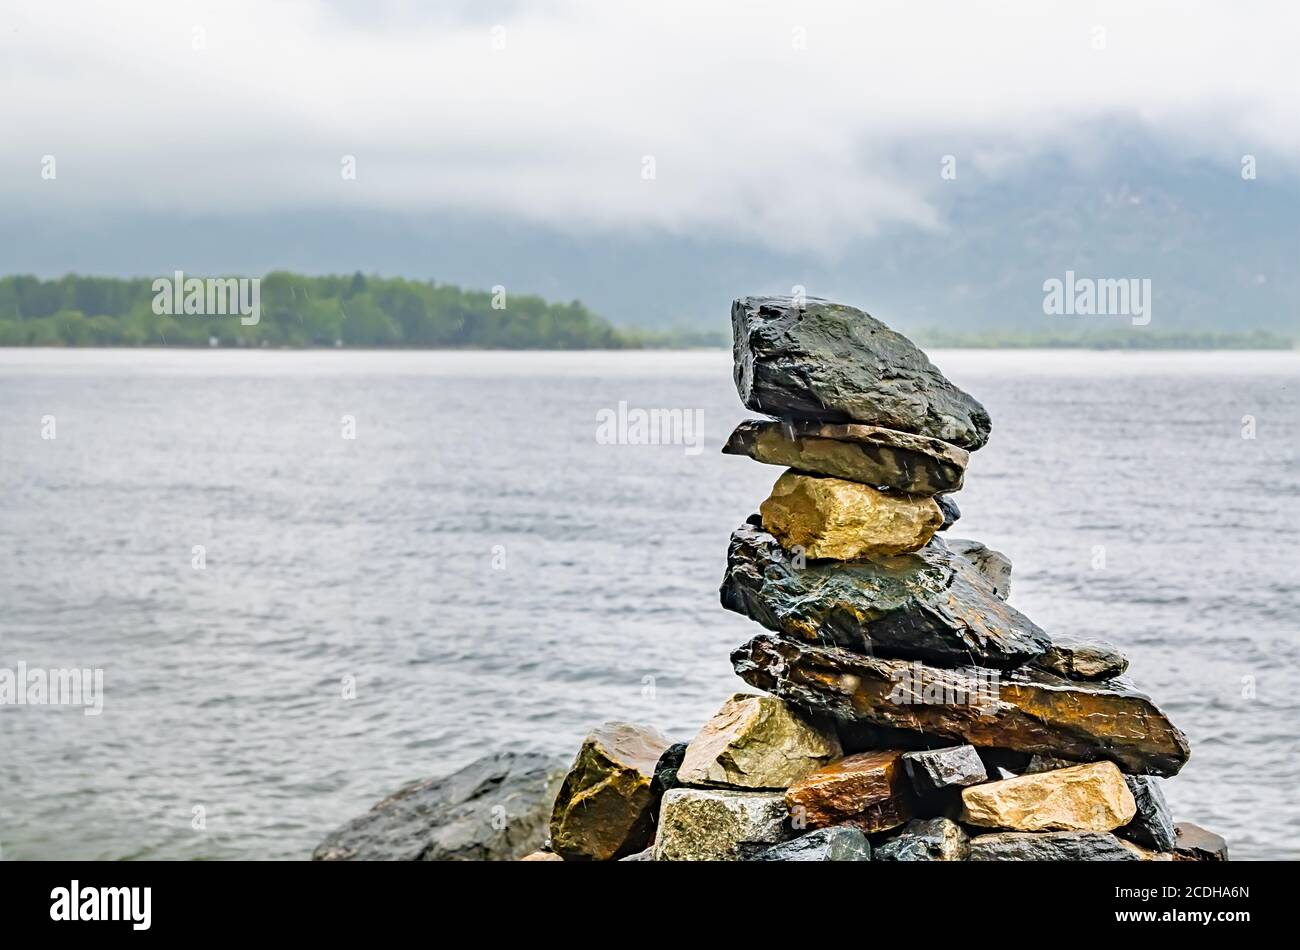 varie pietre accatastate l'una sull'altra nel la forma di una piramide si trova sulla riva del lago in tempo piovoso Foto Stock